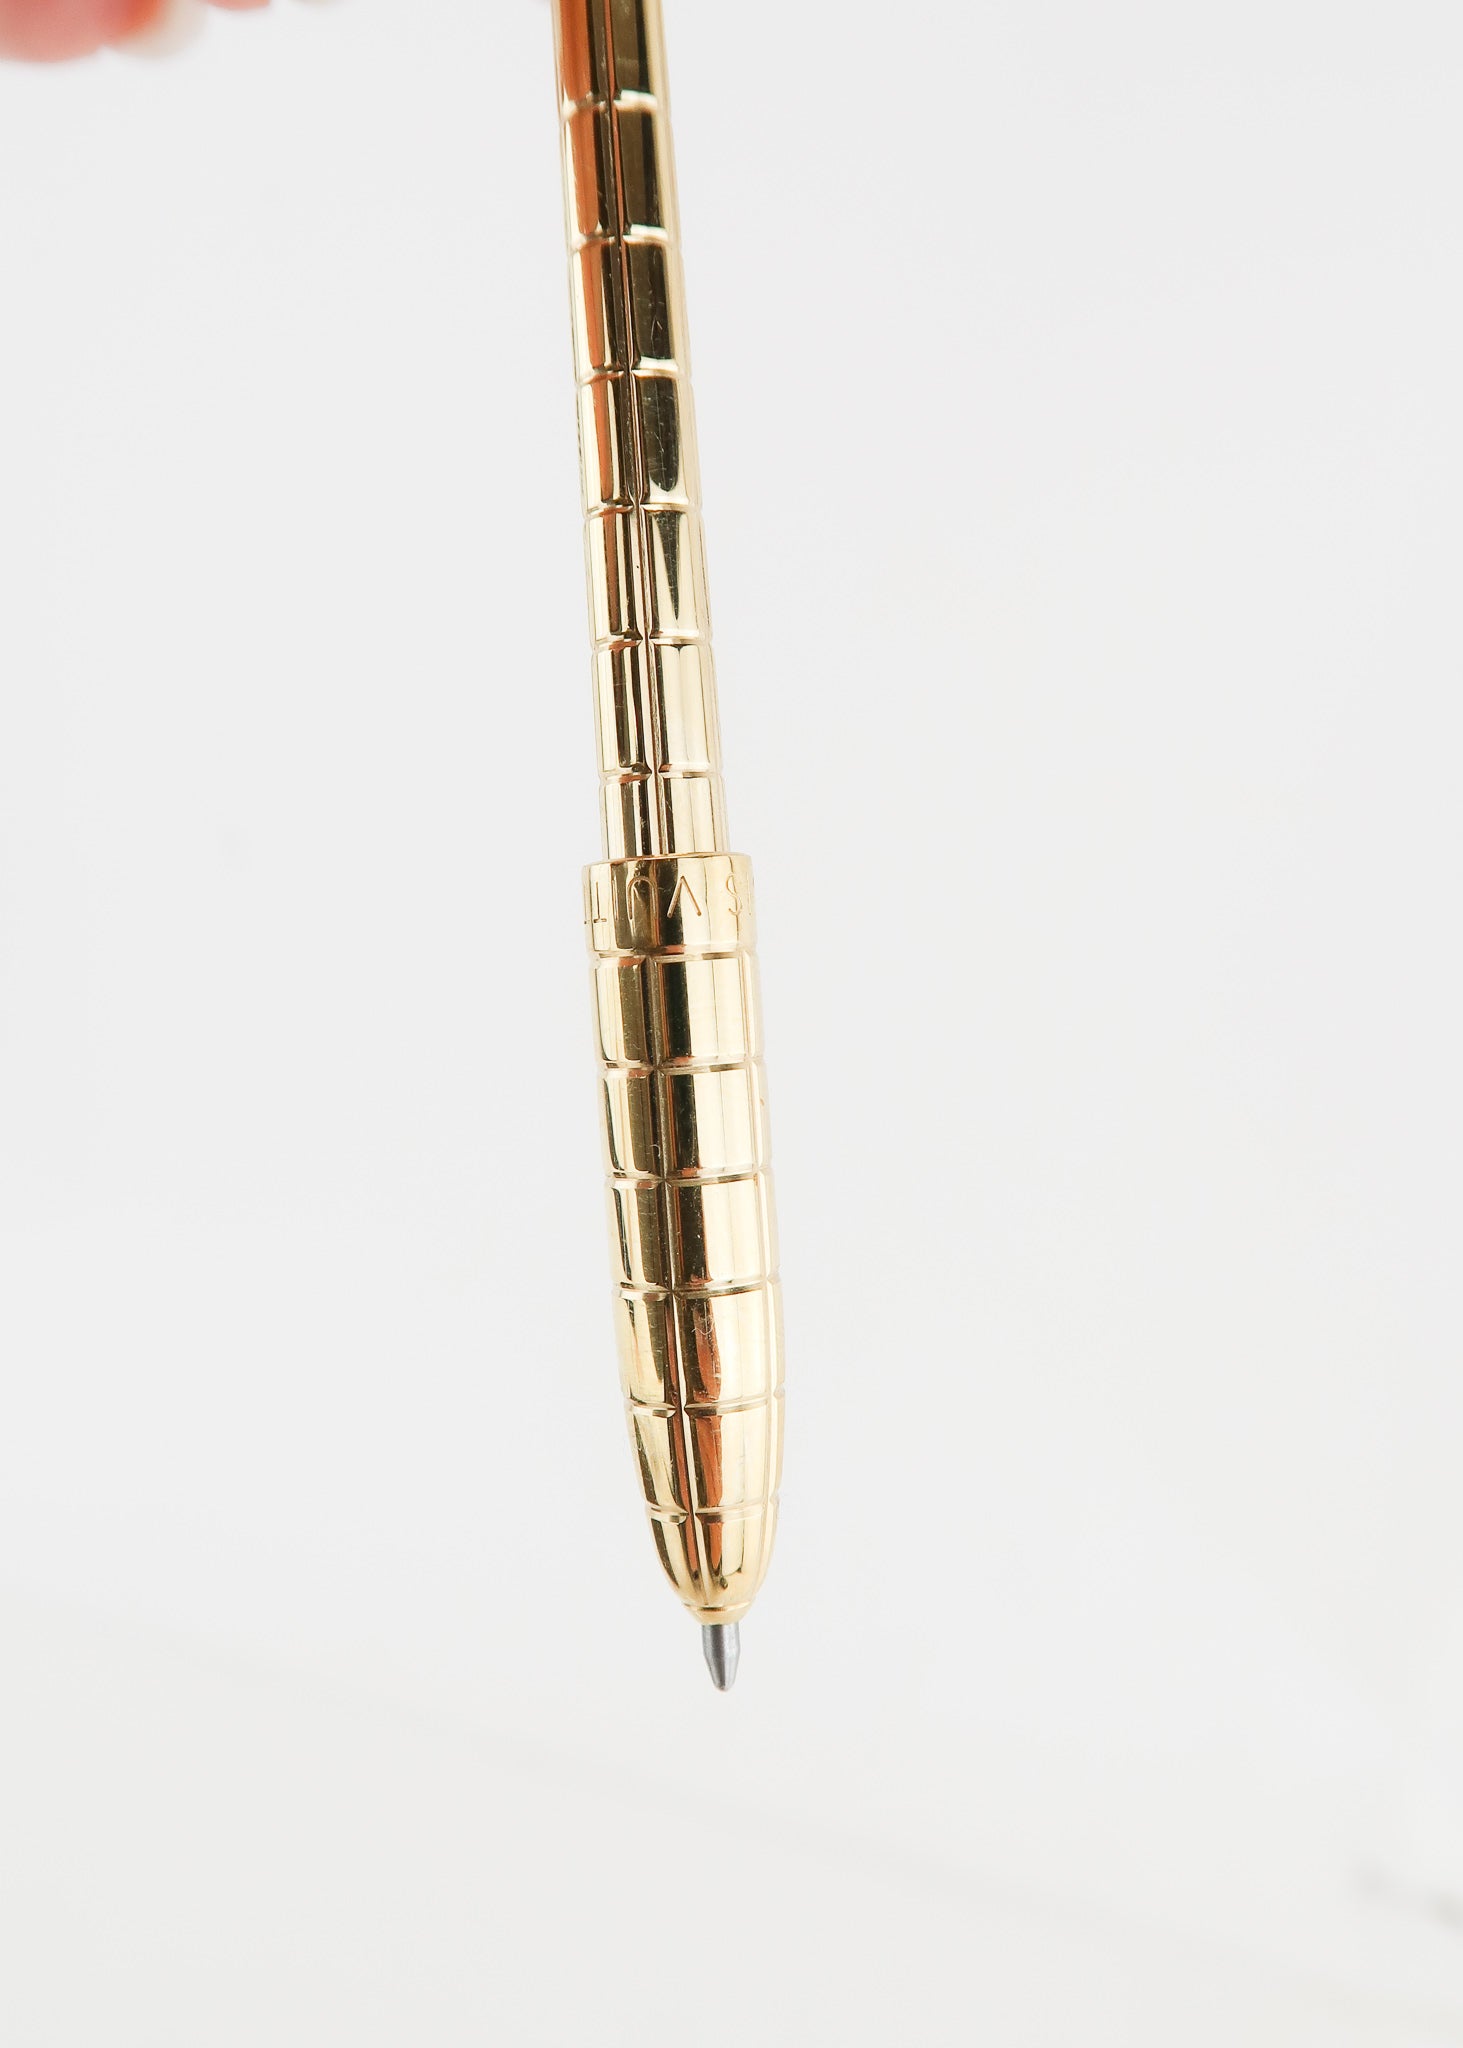 New Louis Vuitton Golden Agenda Ballpoint Pen w/ Refill at 1stDibs